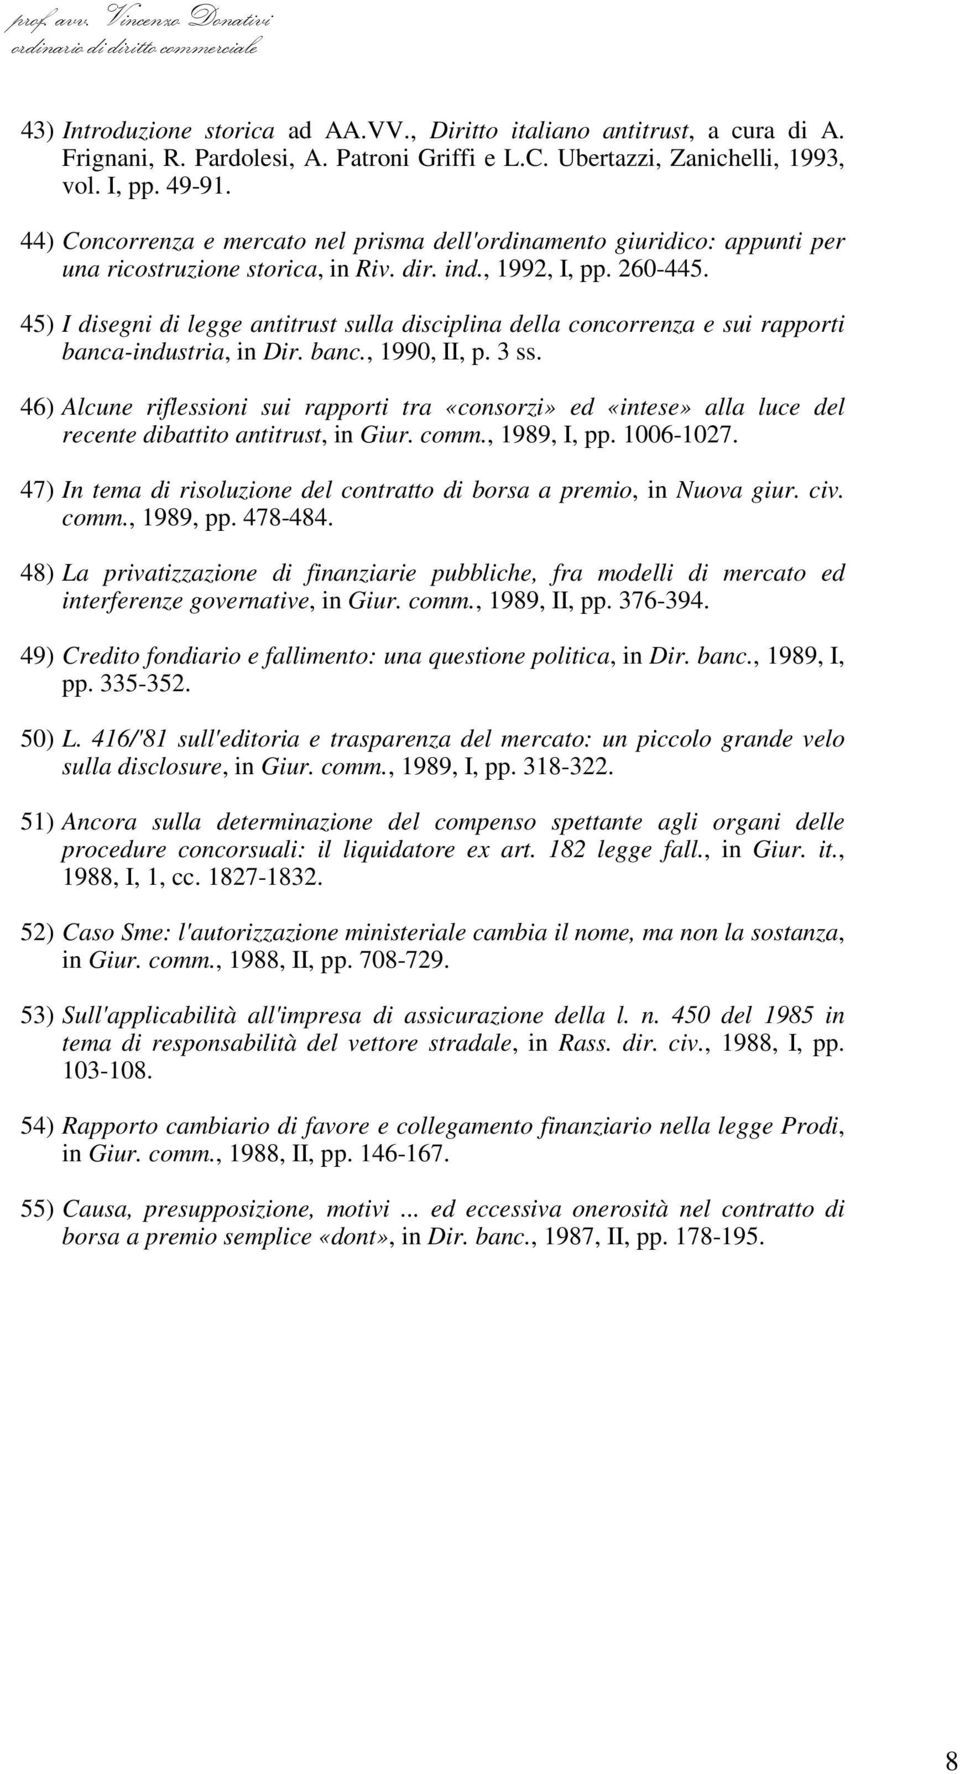 45) I disegni di legge antitrust sulla disciplina della concorrenza e sui rapporti banca-industria, in Dir. banc., 1990, II, p. 3 ss.